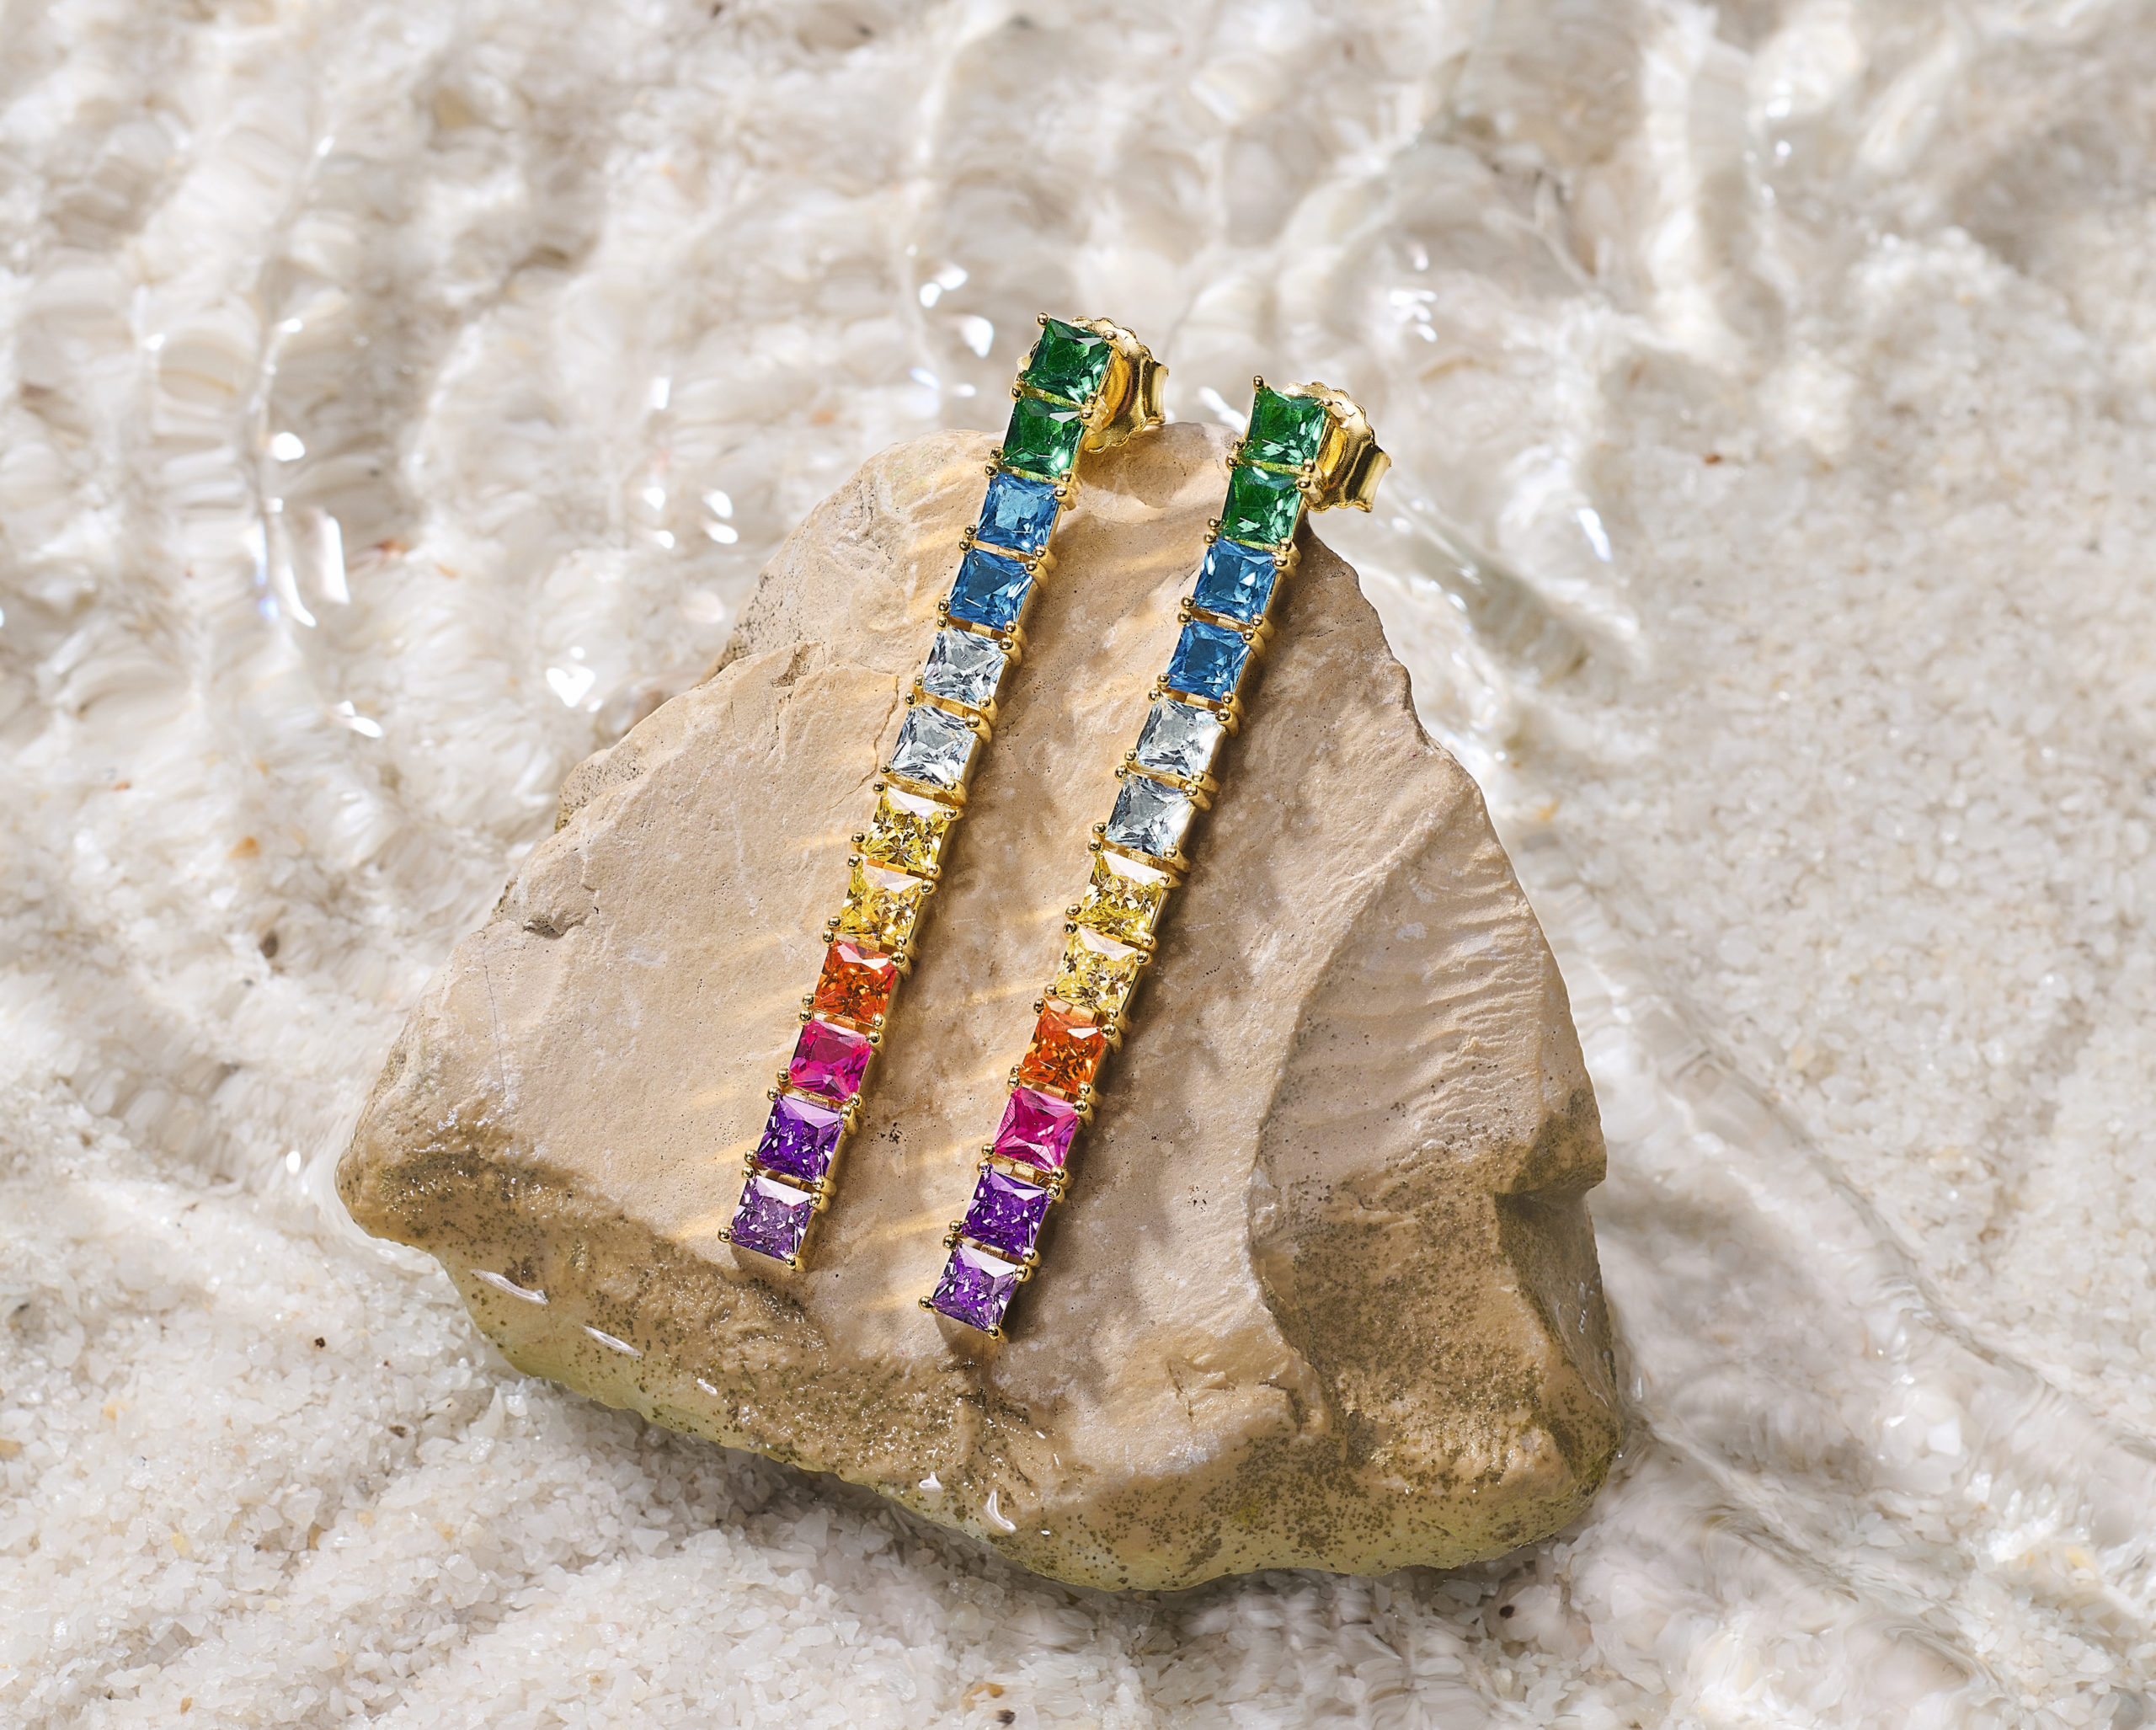 mood-boosting-rainbow-jewellery